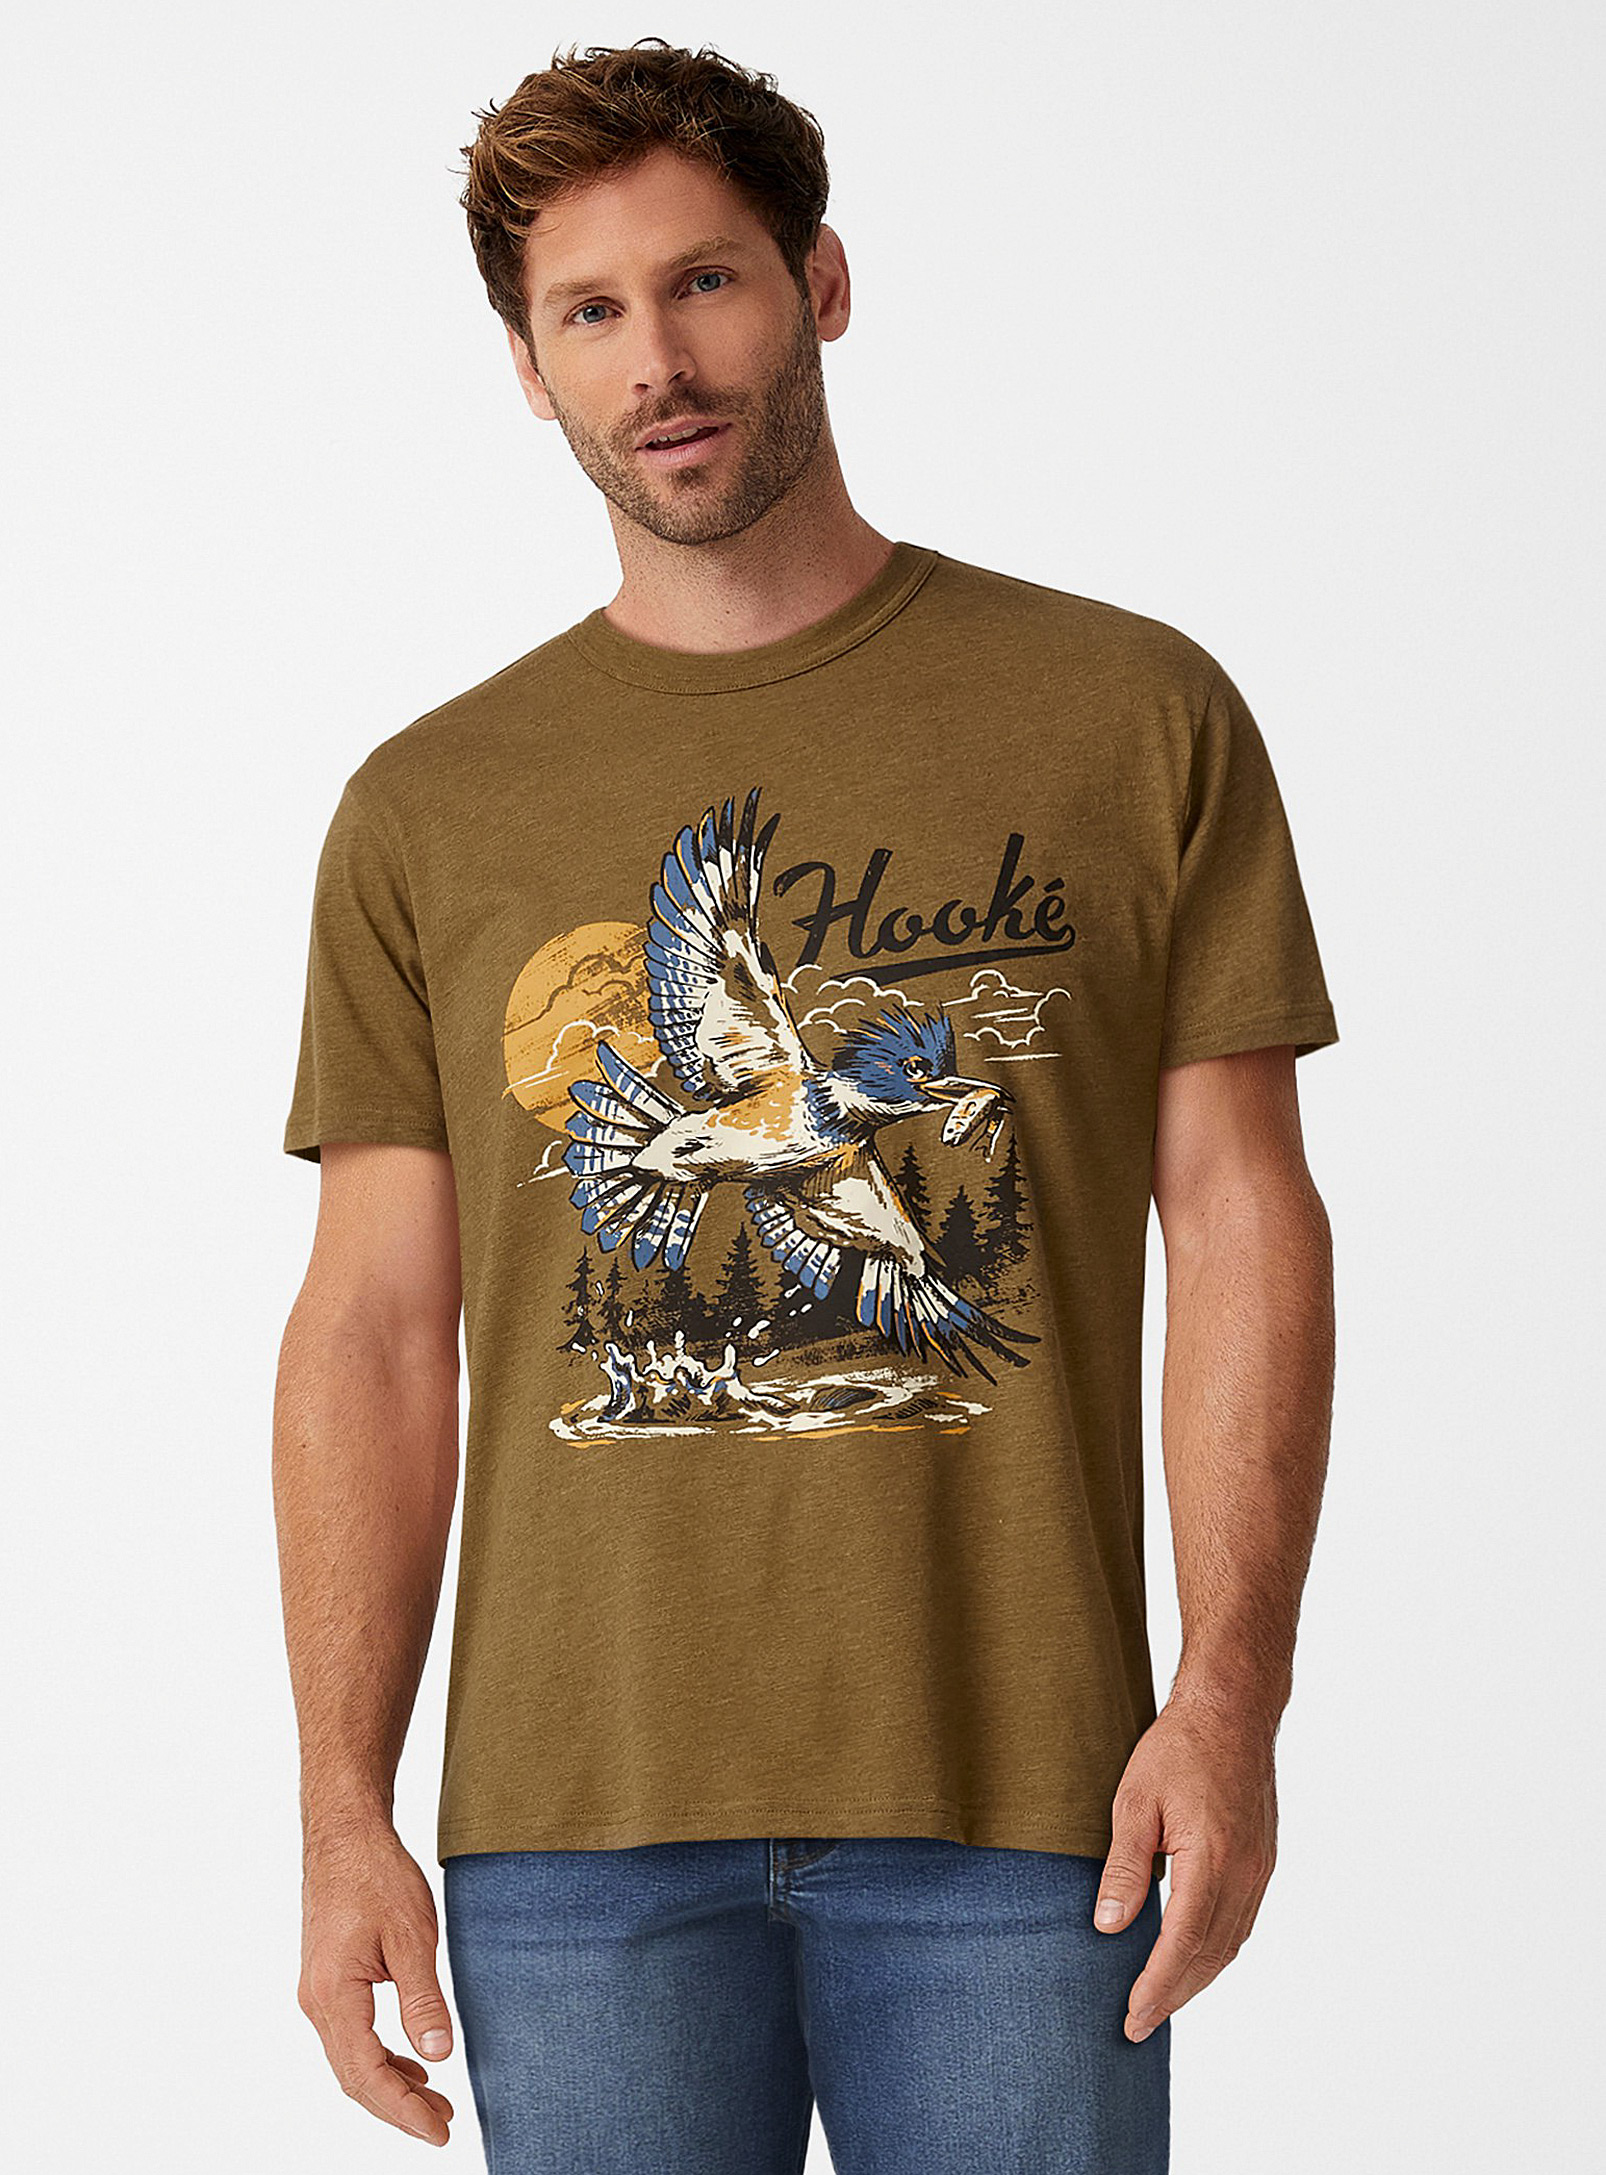 Hooké - Men's Kingfisher Tee Shirt